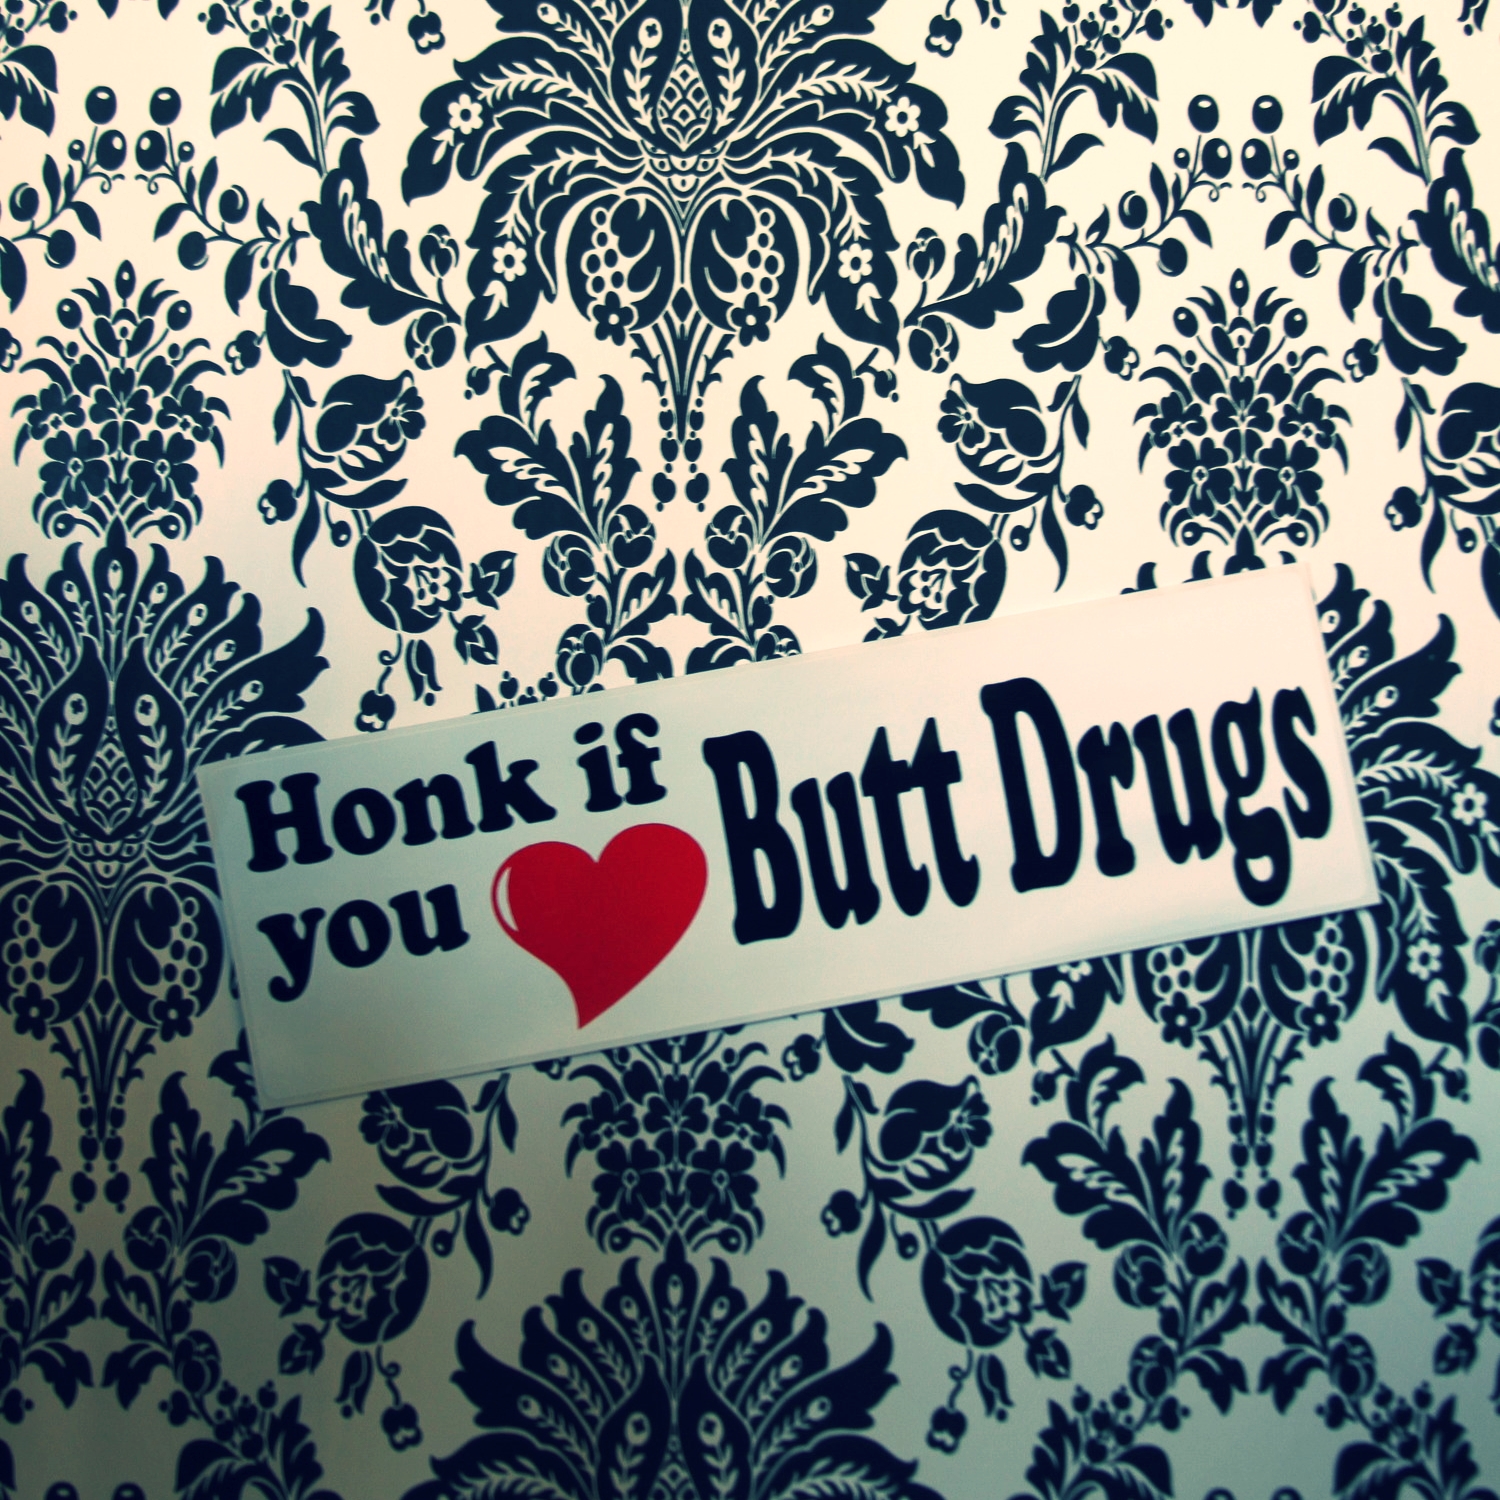 I Love Butt Drugs